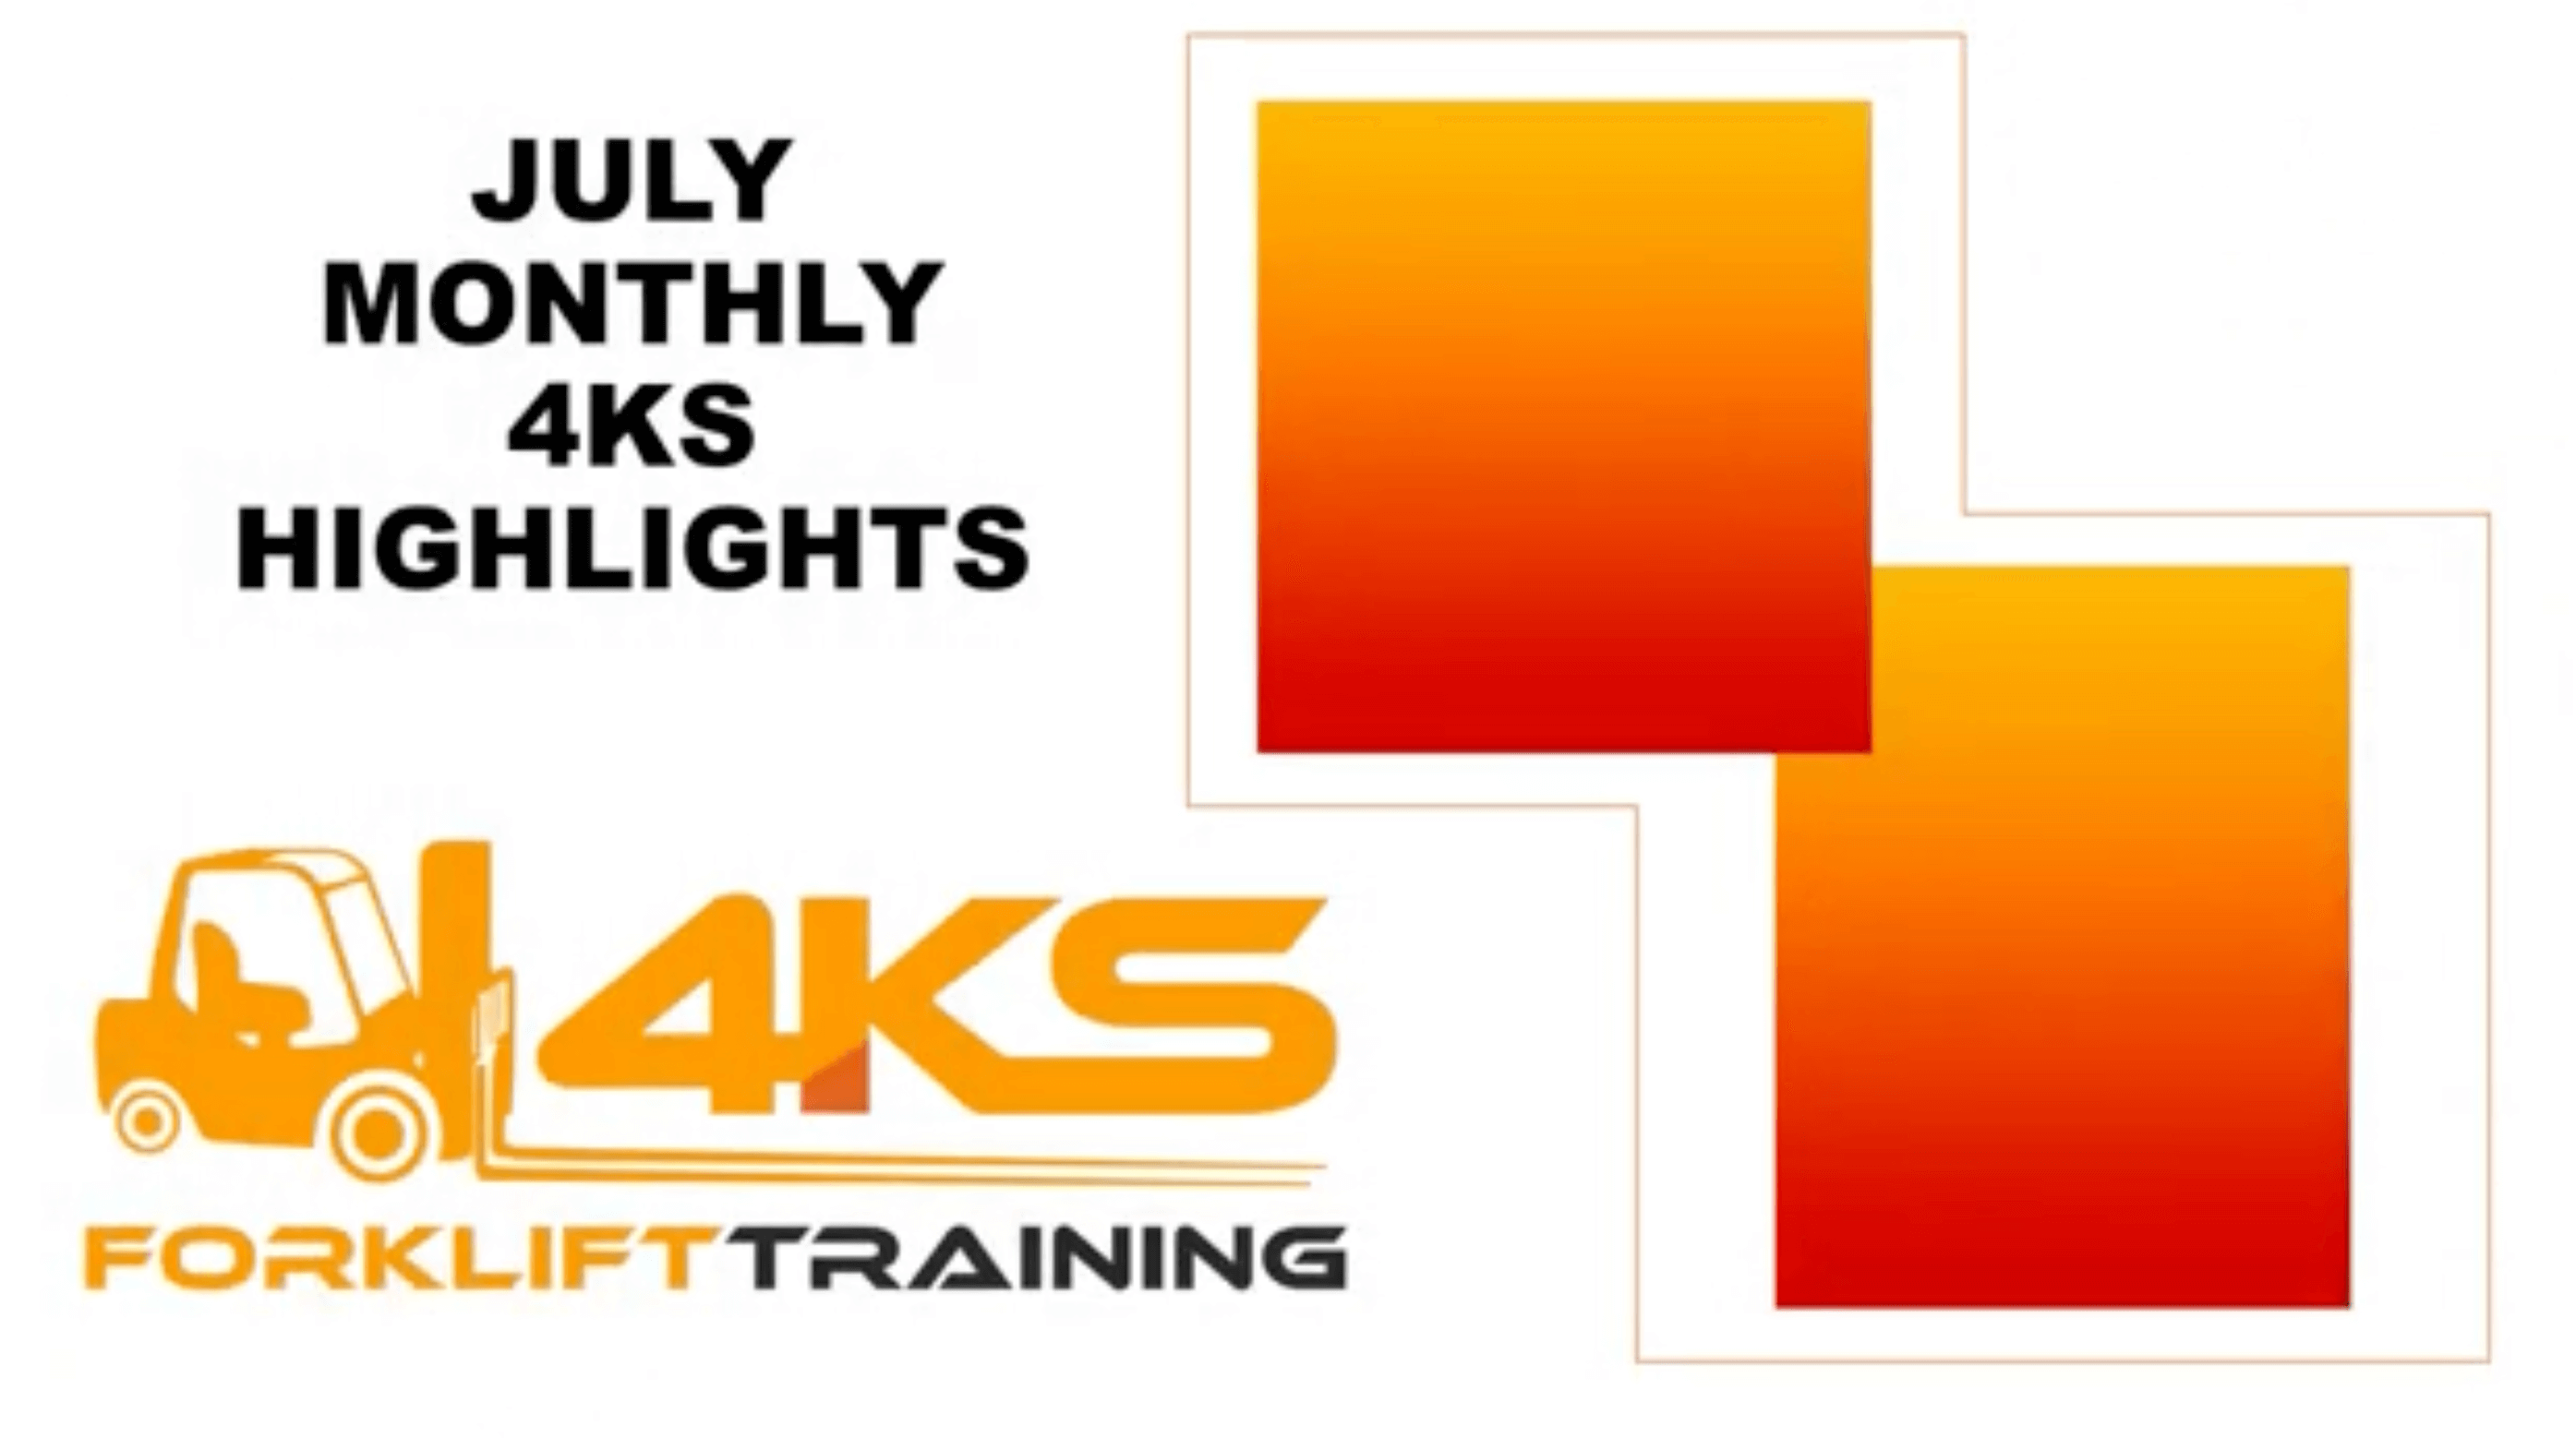 forklift operator training handbook | 4KS Forklift Training